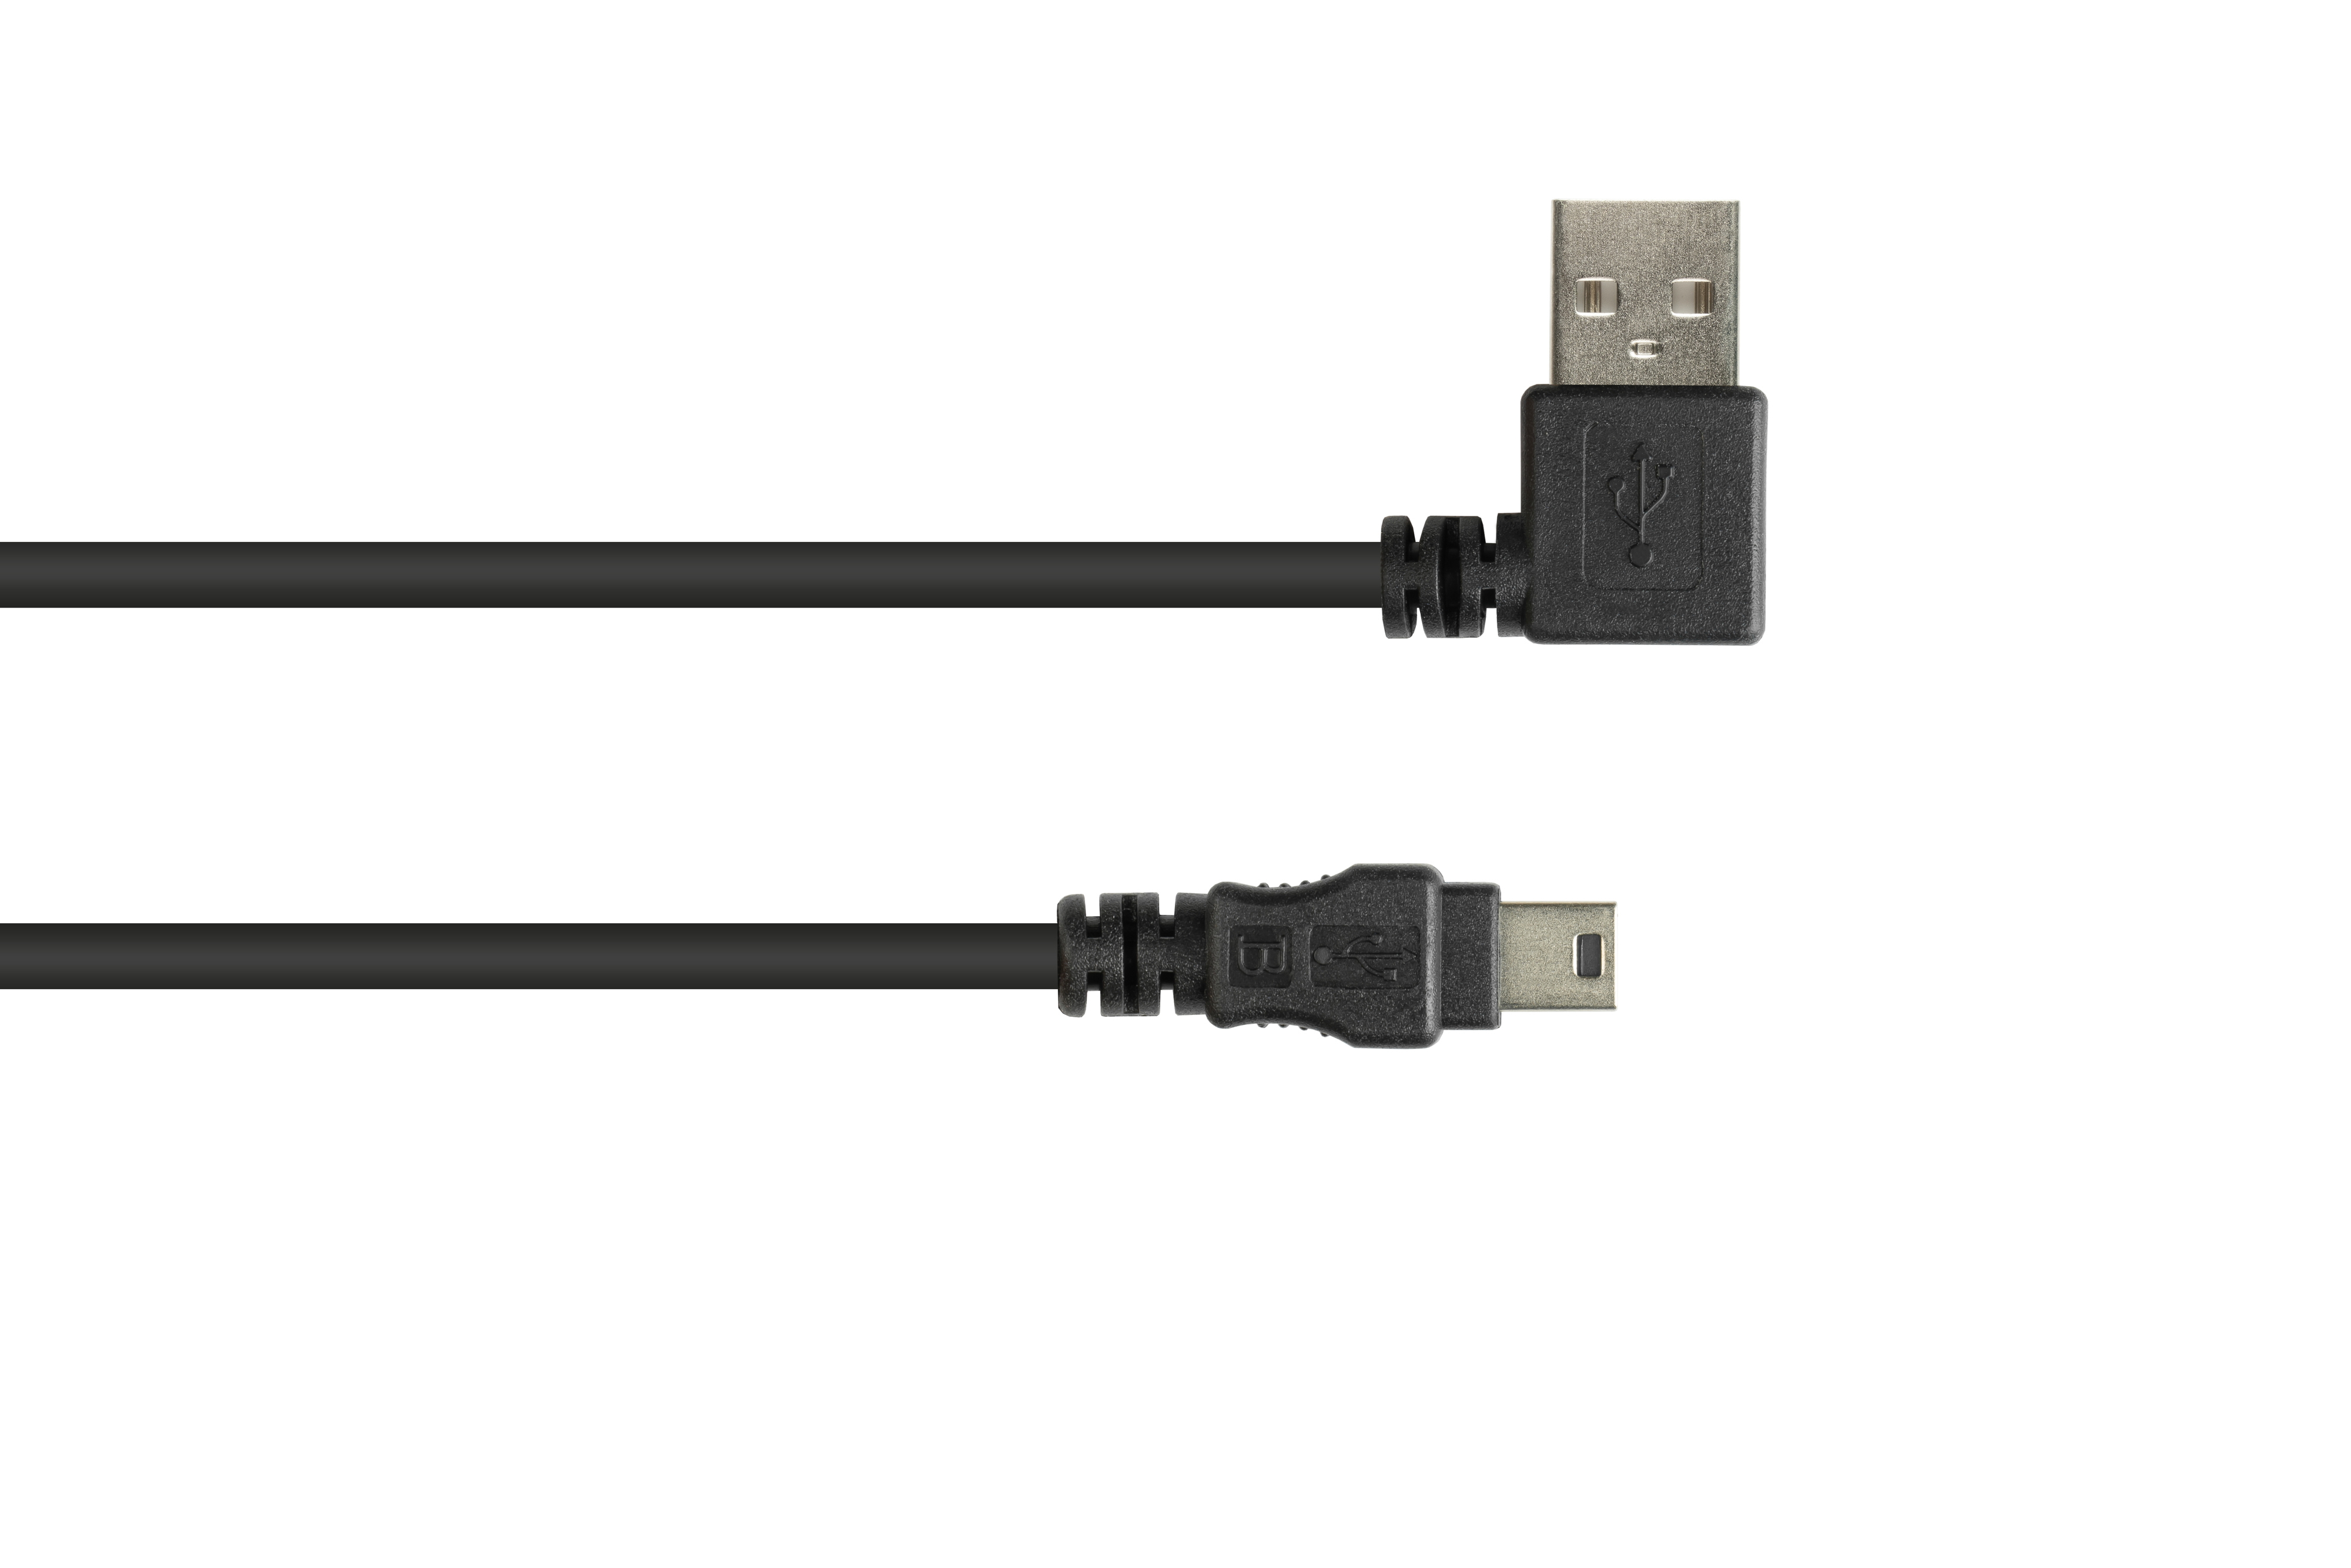 GOOD CONNECTIONS USB 2.0 Mini Stecker, Anschlusskabel schwarz EASY Stecker an gewinkelt, B A